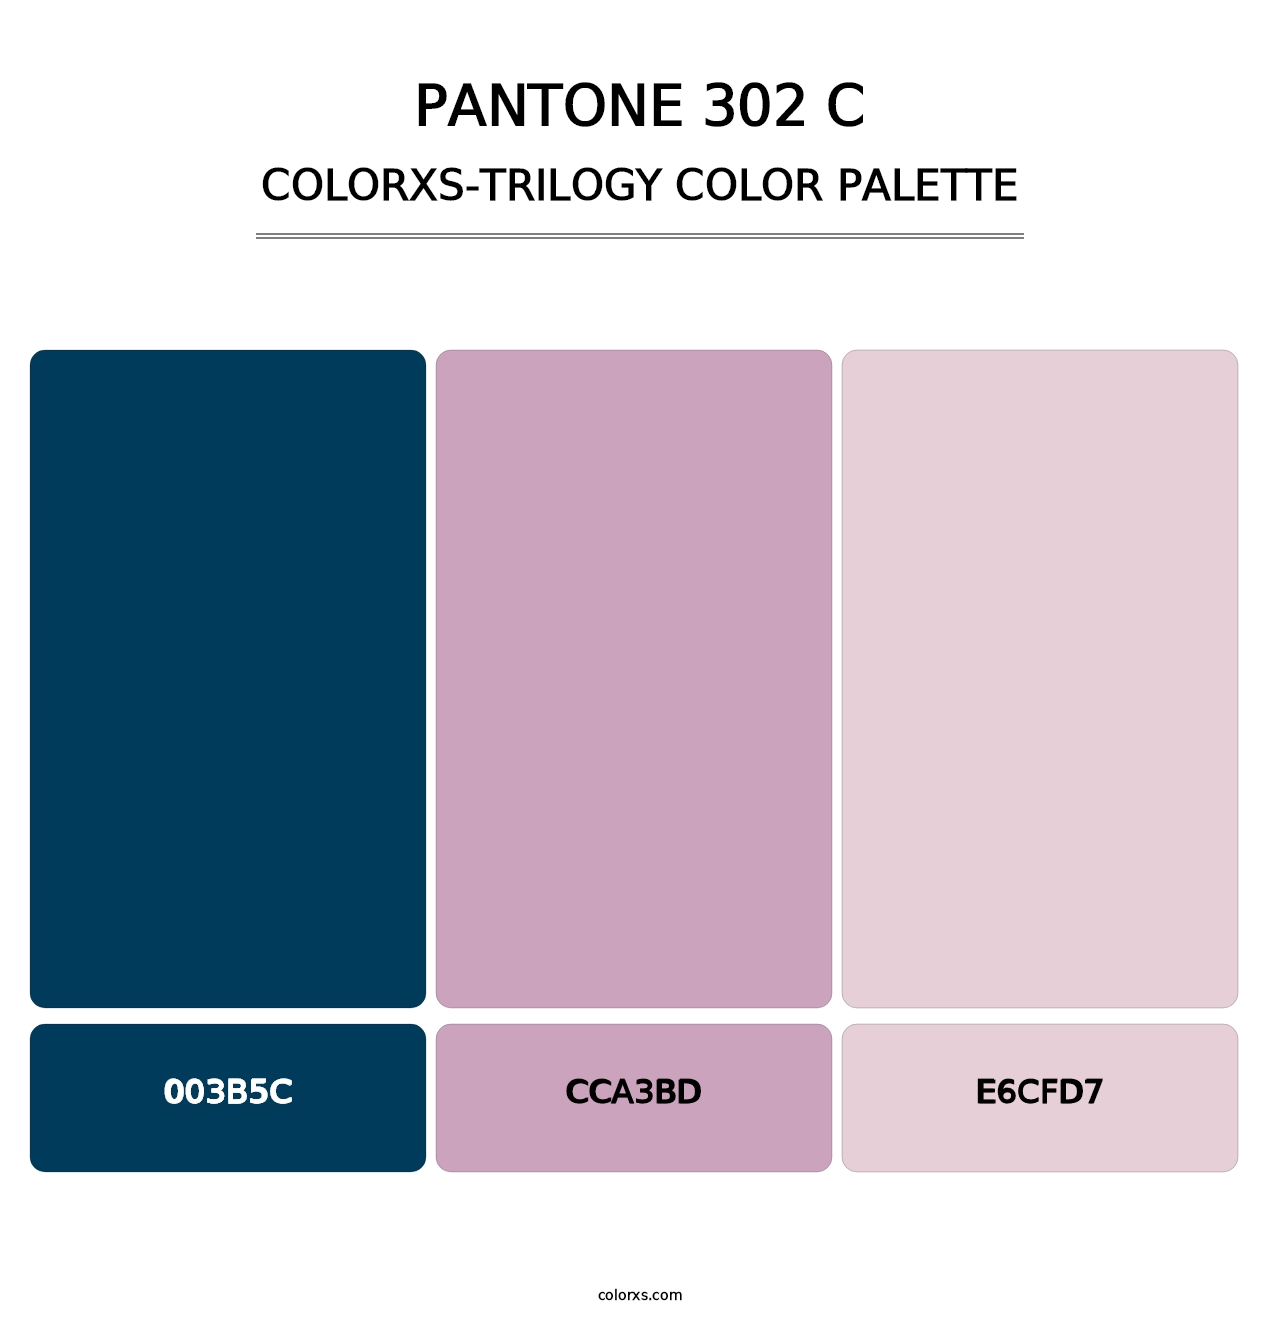 PANTONE 302 C - Colorxs Trilogy Palette